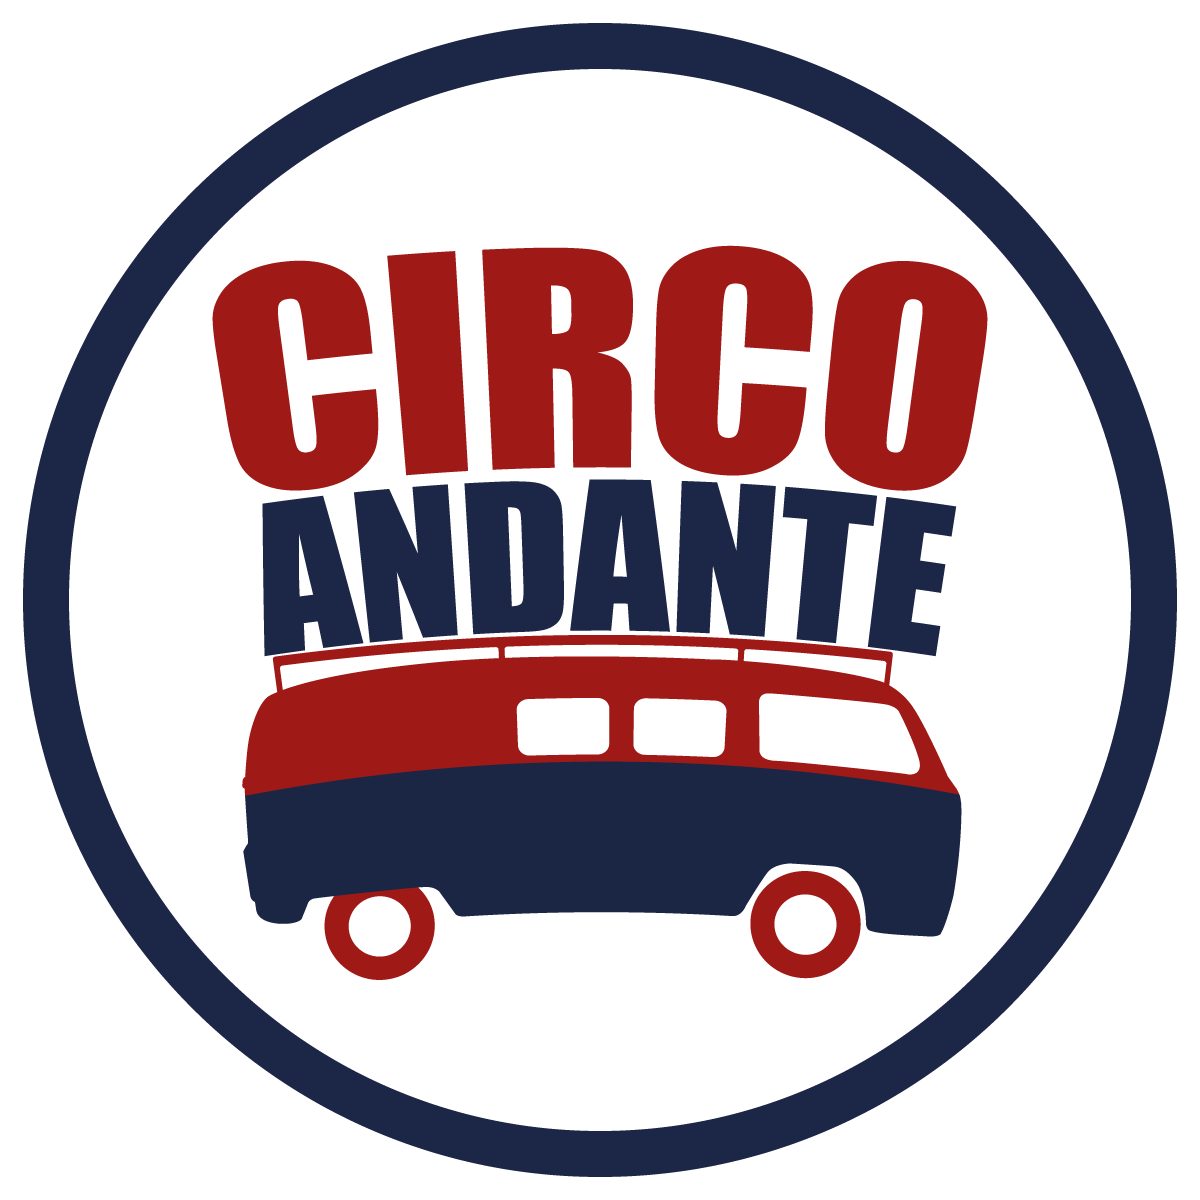 CIRCO ANDANTE